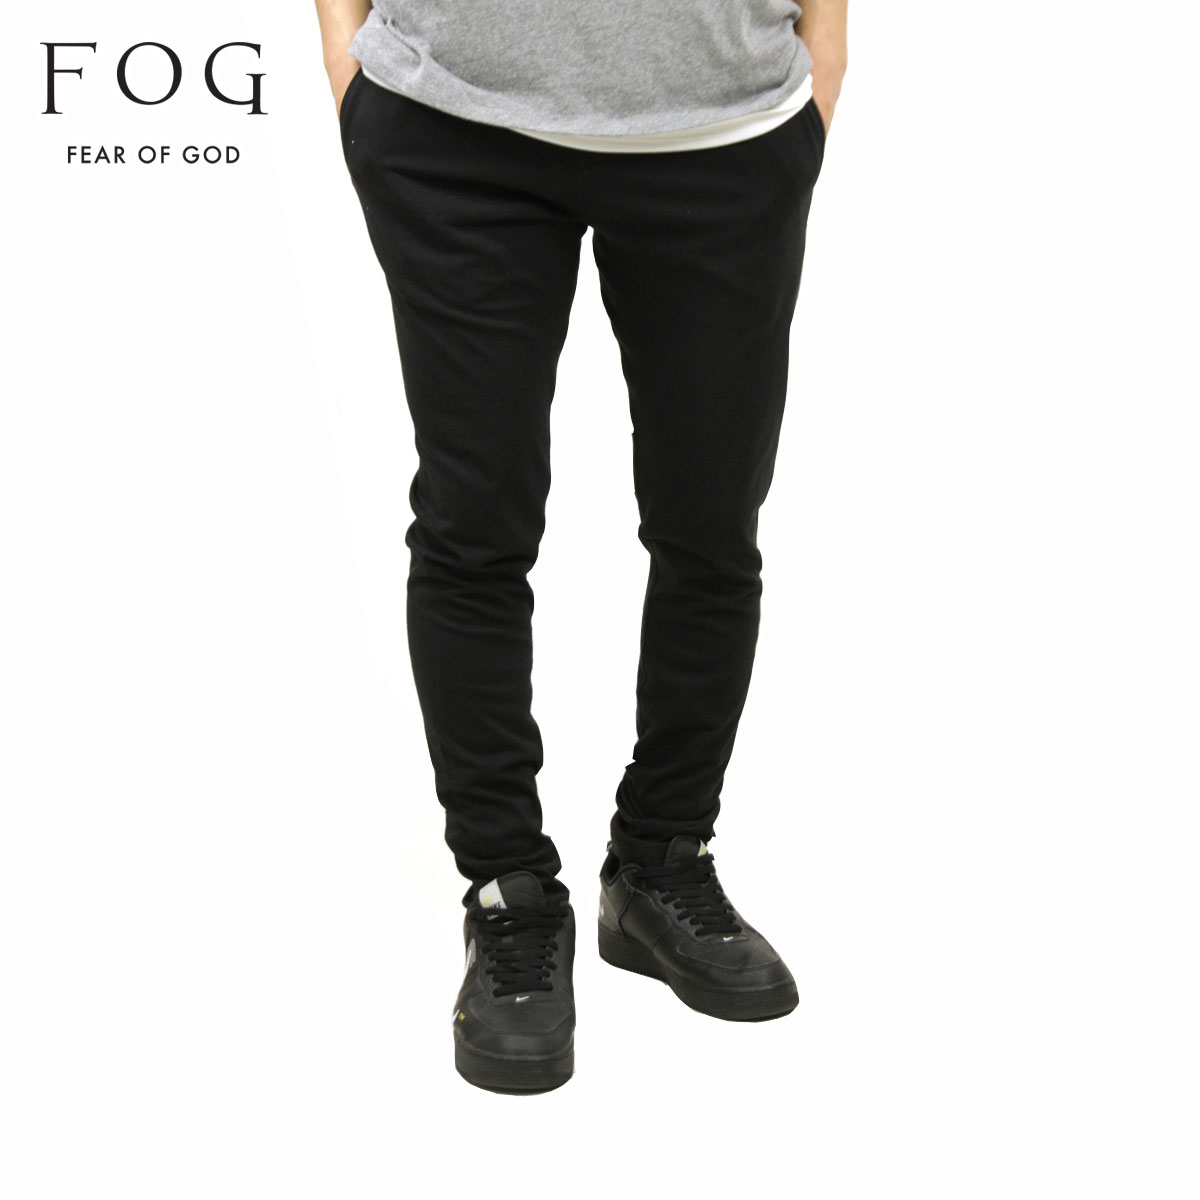 フィアオブゴッド fog essentials パンツ メンズ 正規品 FEAR OF GOD エッセンシャルズ スウェットパンツ ラウンジパンツ FOG - FEAR OF GOD ESSENTIALS LOUNGE PANTS BLACK 父の日 プレゼント ラッピング